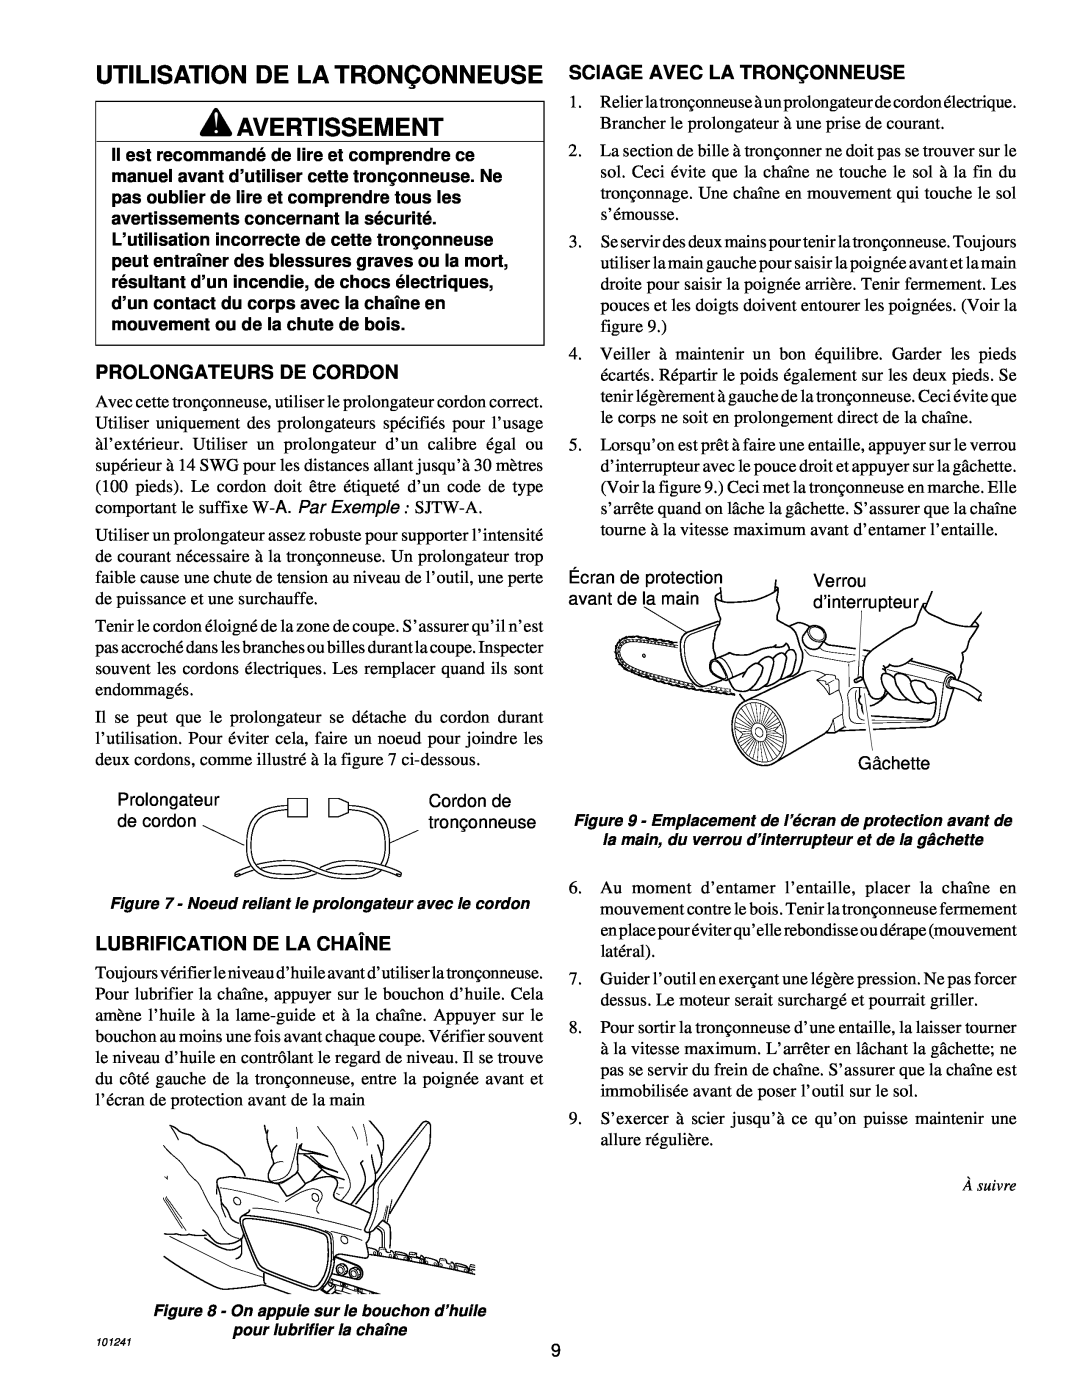 Remington 100582-01, 100582-02, EL-7B owner manual Utilisation De La Tronç Onneuse Avertissement, Prolongateurs De Cordon 